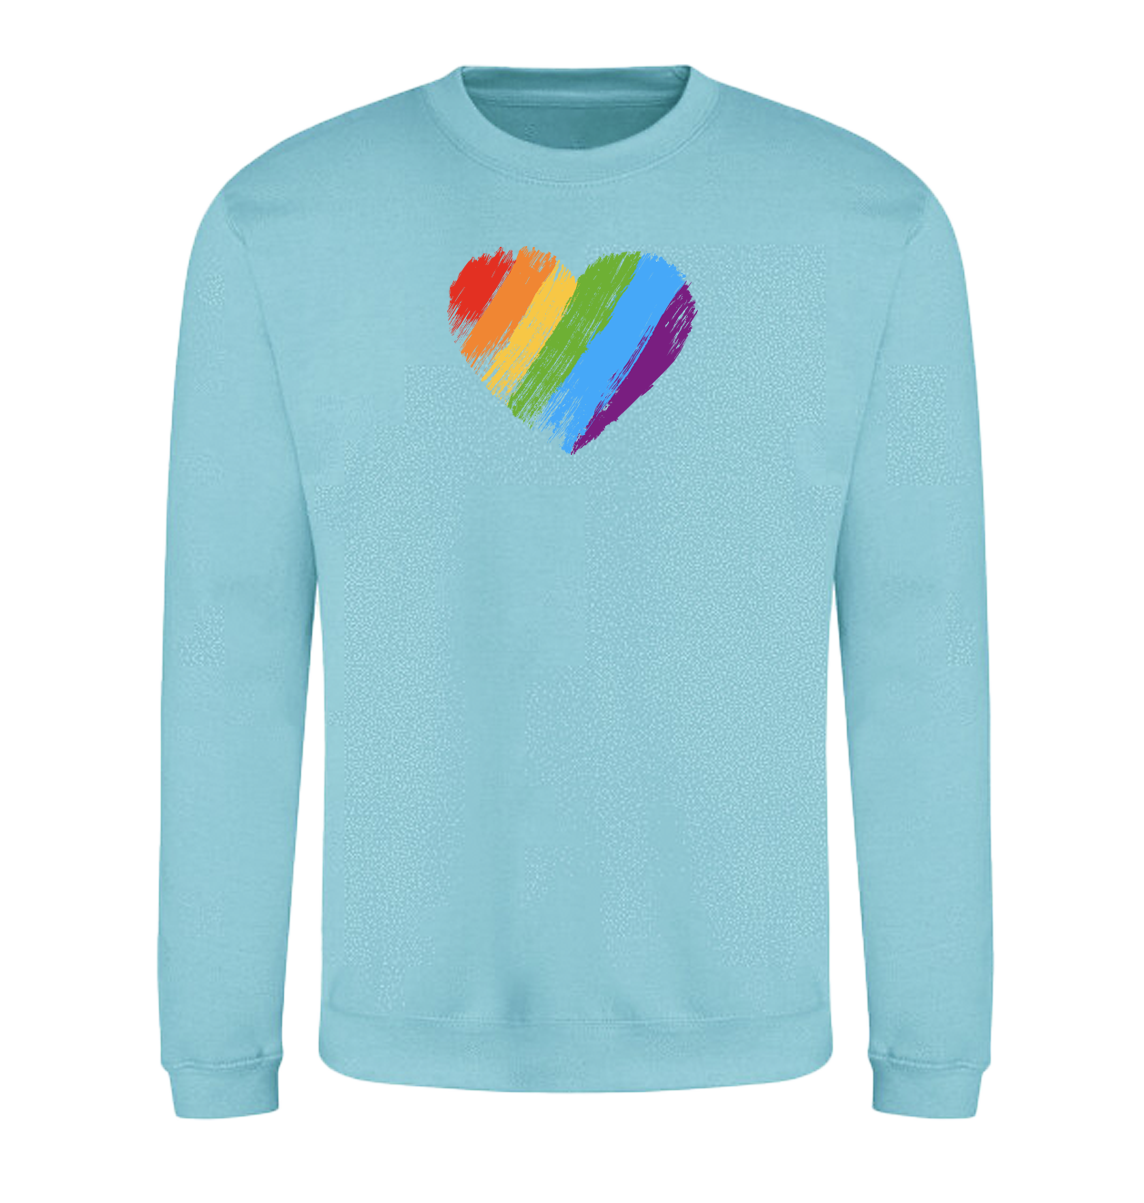 Rainbow Heart Sweatshirt